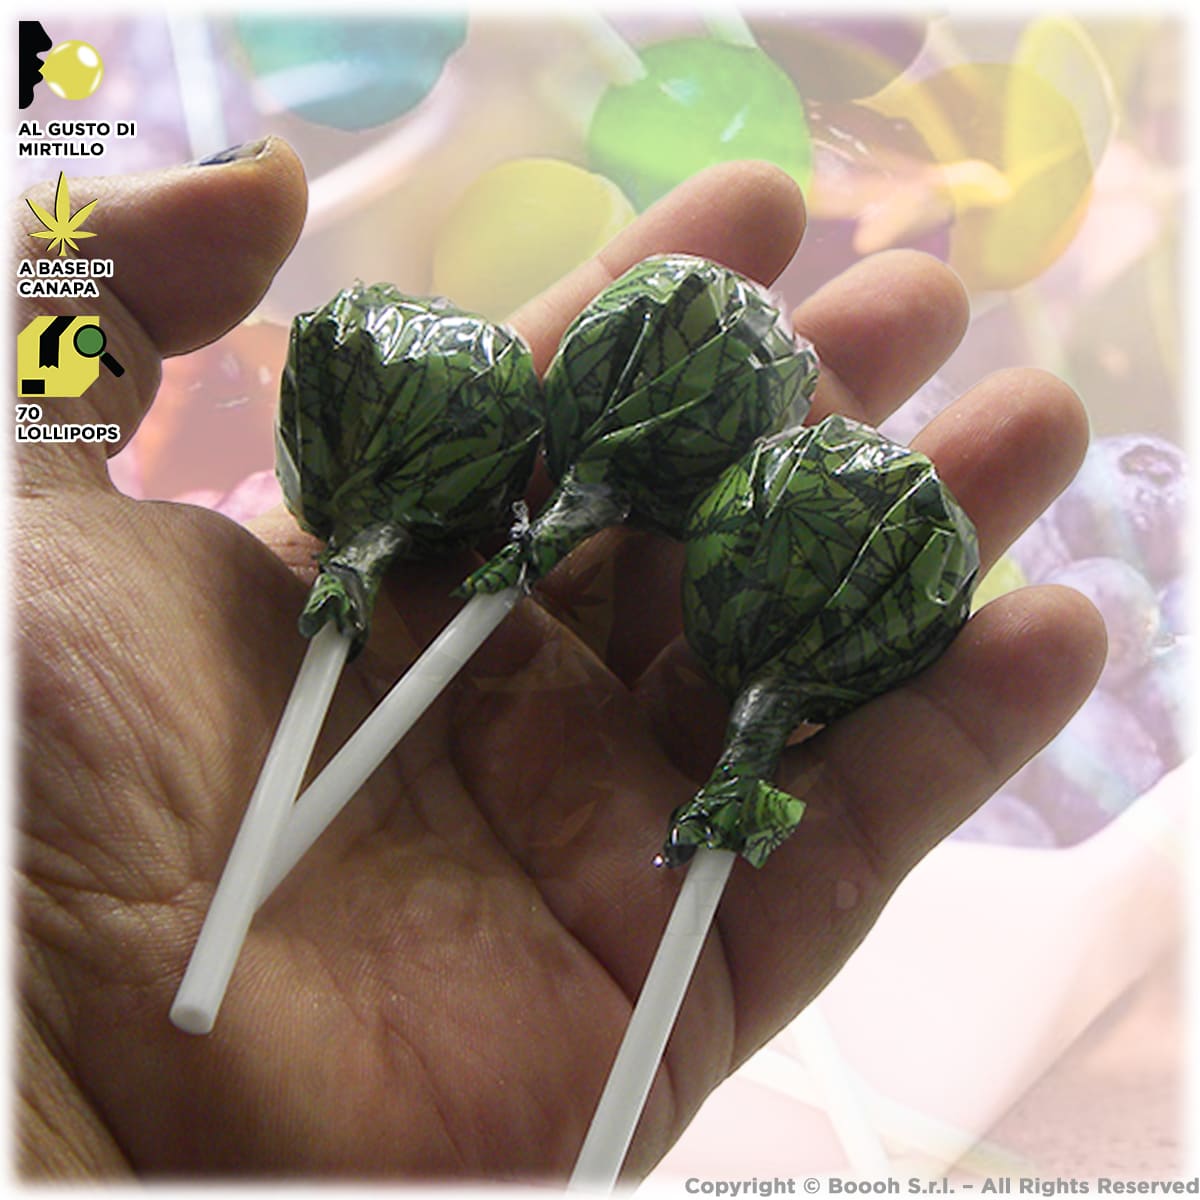 lollipops con cannabis e gomma da masticare al suo interno del dr greenlove